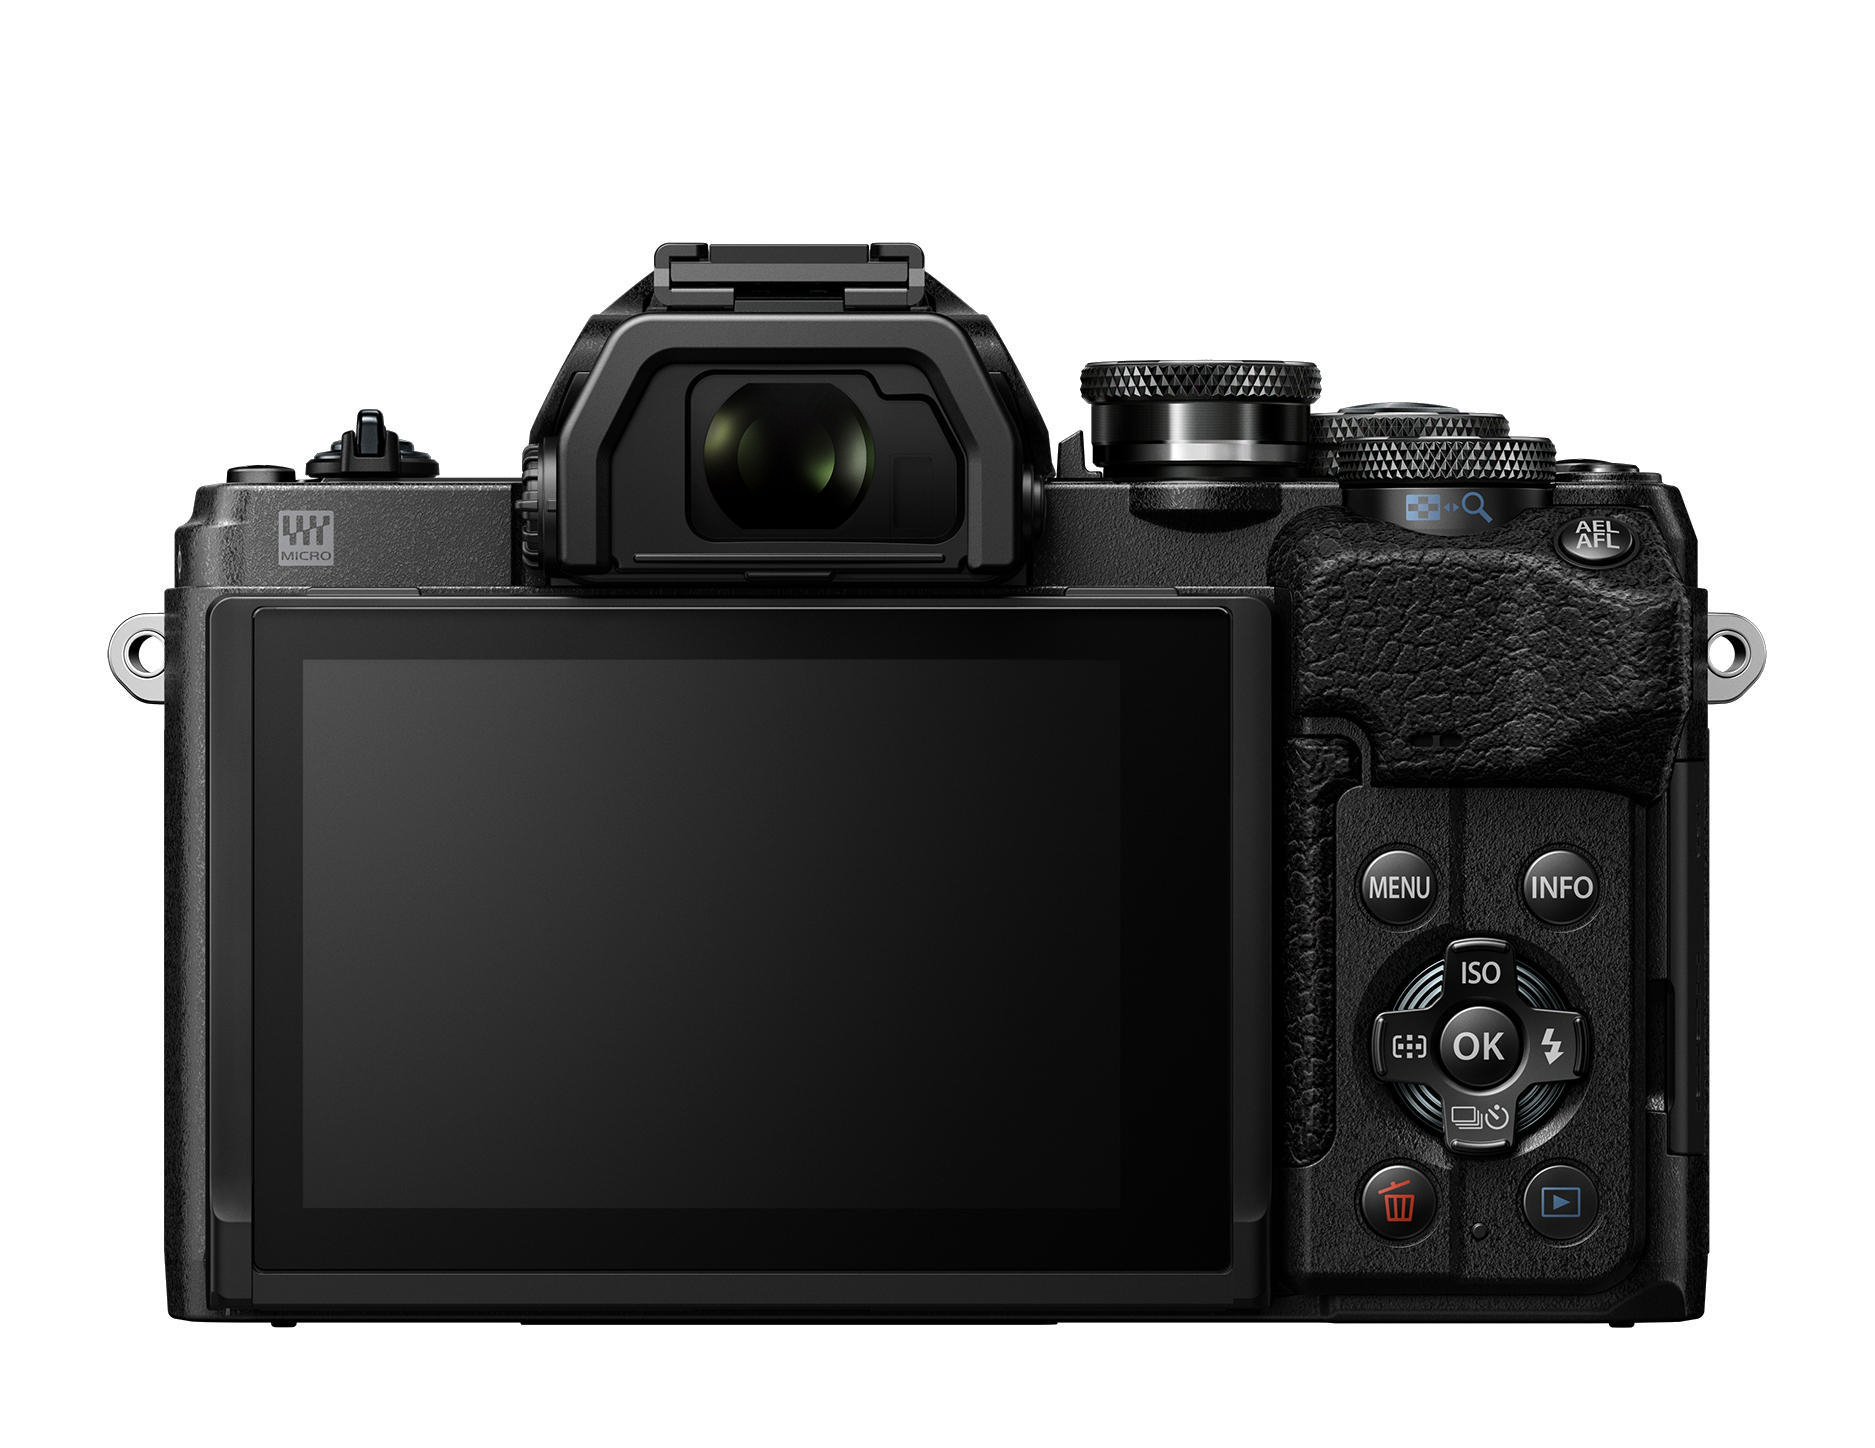 Selfie cm kompakte Kit, E-M10 IV 7,6 Mark Display WLAN Pancake F3.5-5.6, OLYMPUS Systemkamera, Touchscreen, OM-D 14-42mm